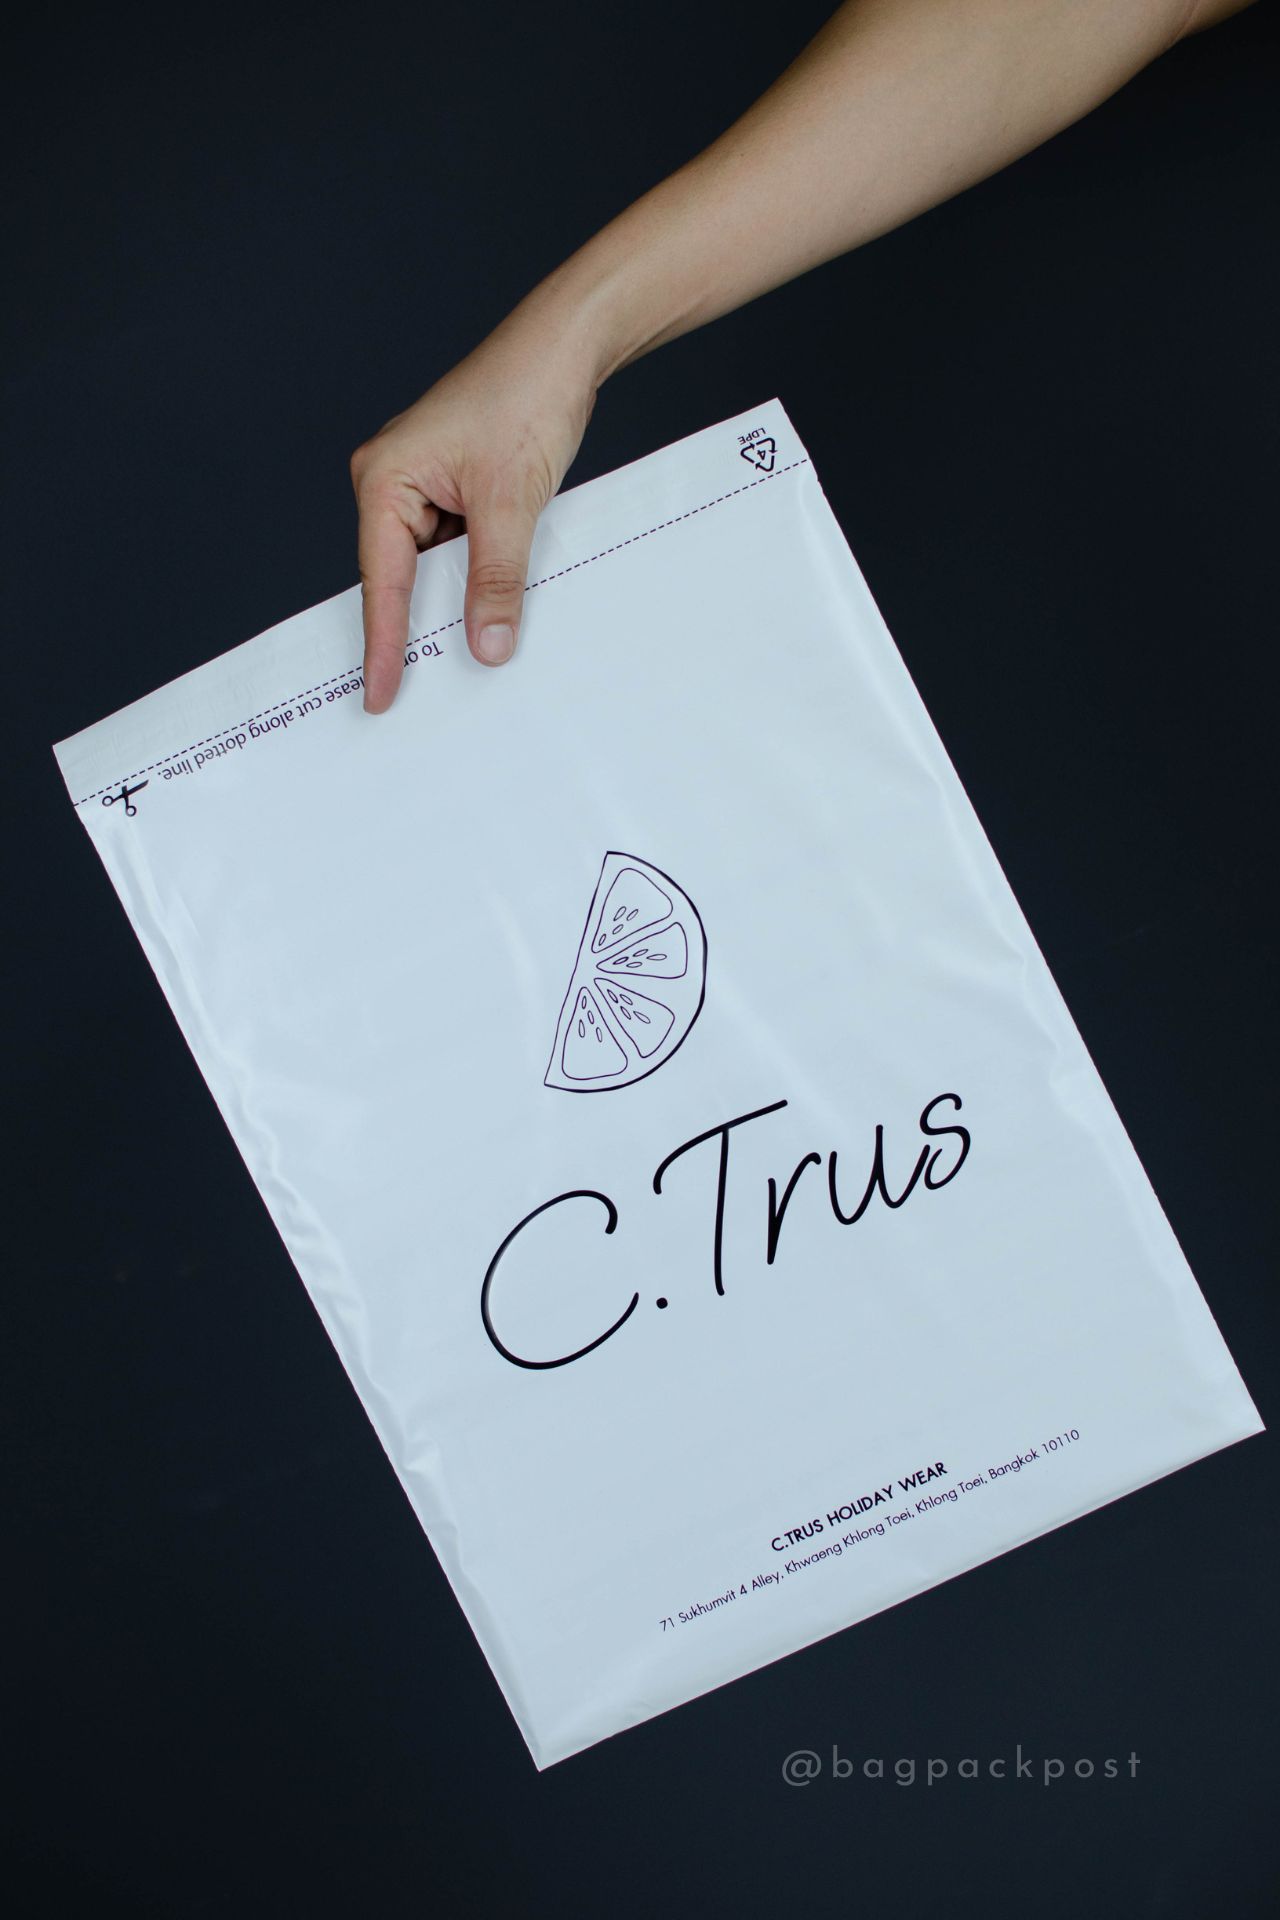 ผลิตถุงไปรษณีย์ ถุงพัสดุ ซองไปรษณีย์พิมพ์ลาย C.Trus ซองไปรษณีย์สีขาว ถุงไปรษณีย์พิมพ์ลาย 1 BagPackPost